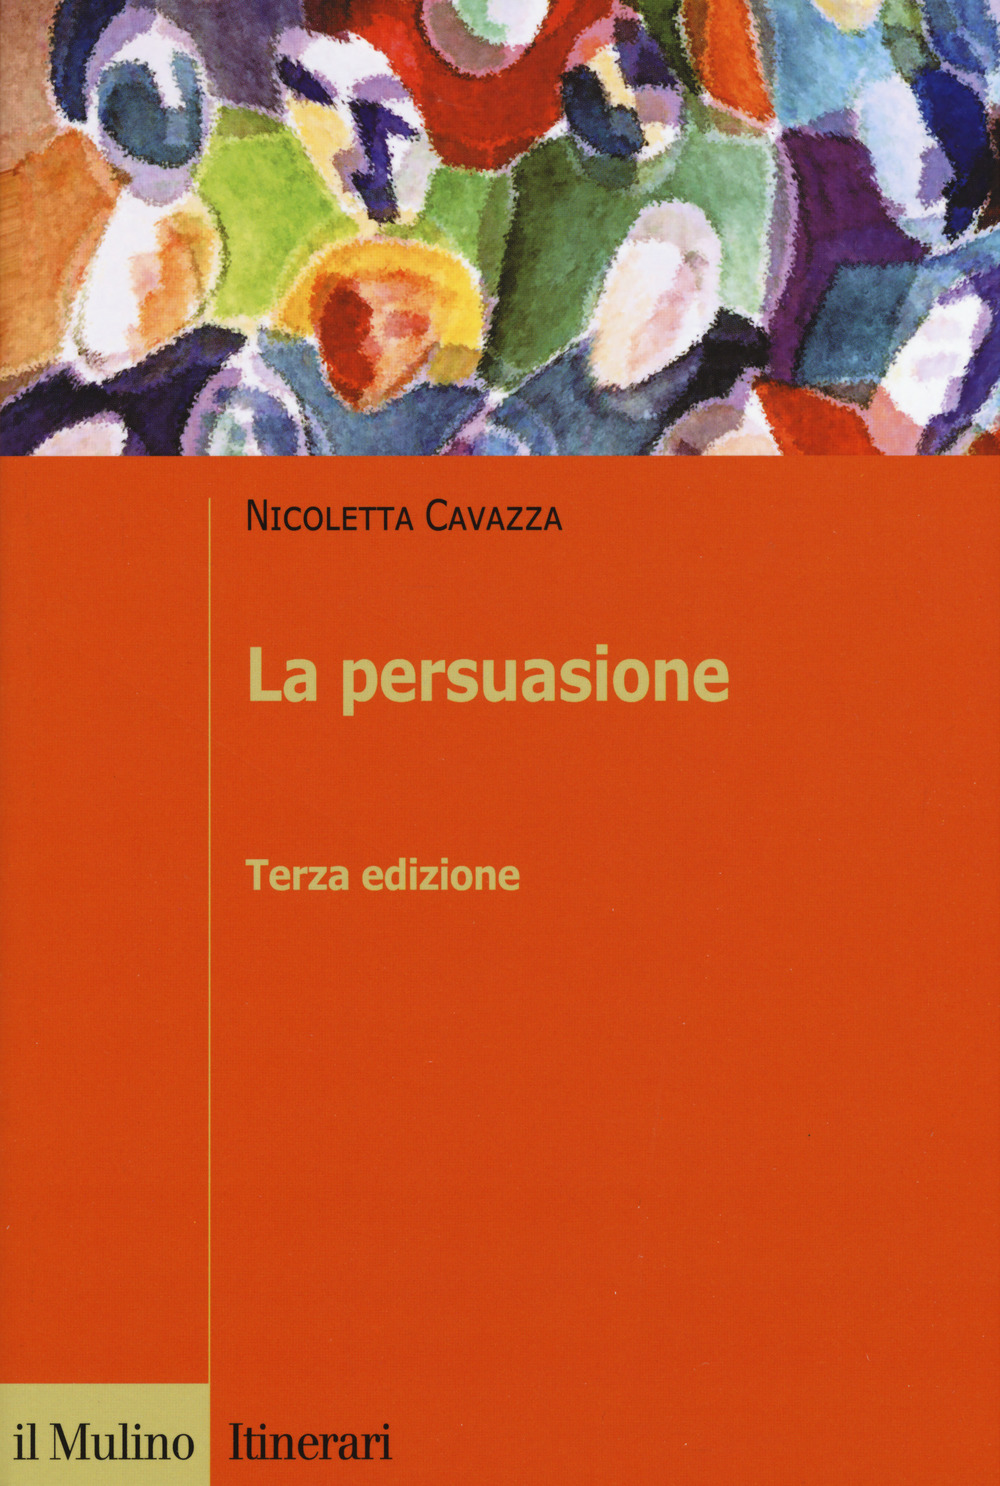 Libri Nicoletta Cavazza - La Persuasione NUOVO SIGILLATO, EDIZIONE DEL 08/02/2018 SUBITO DISPONIBILE